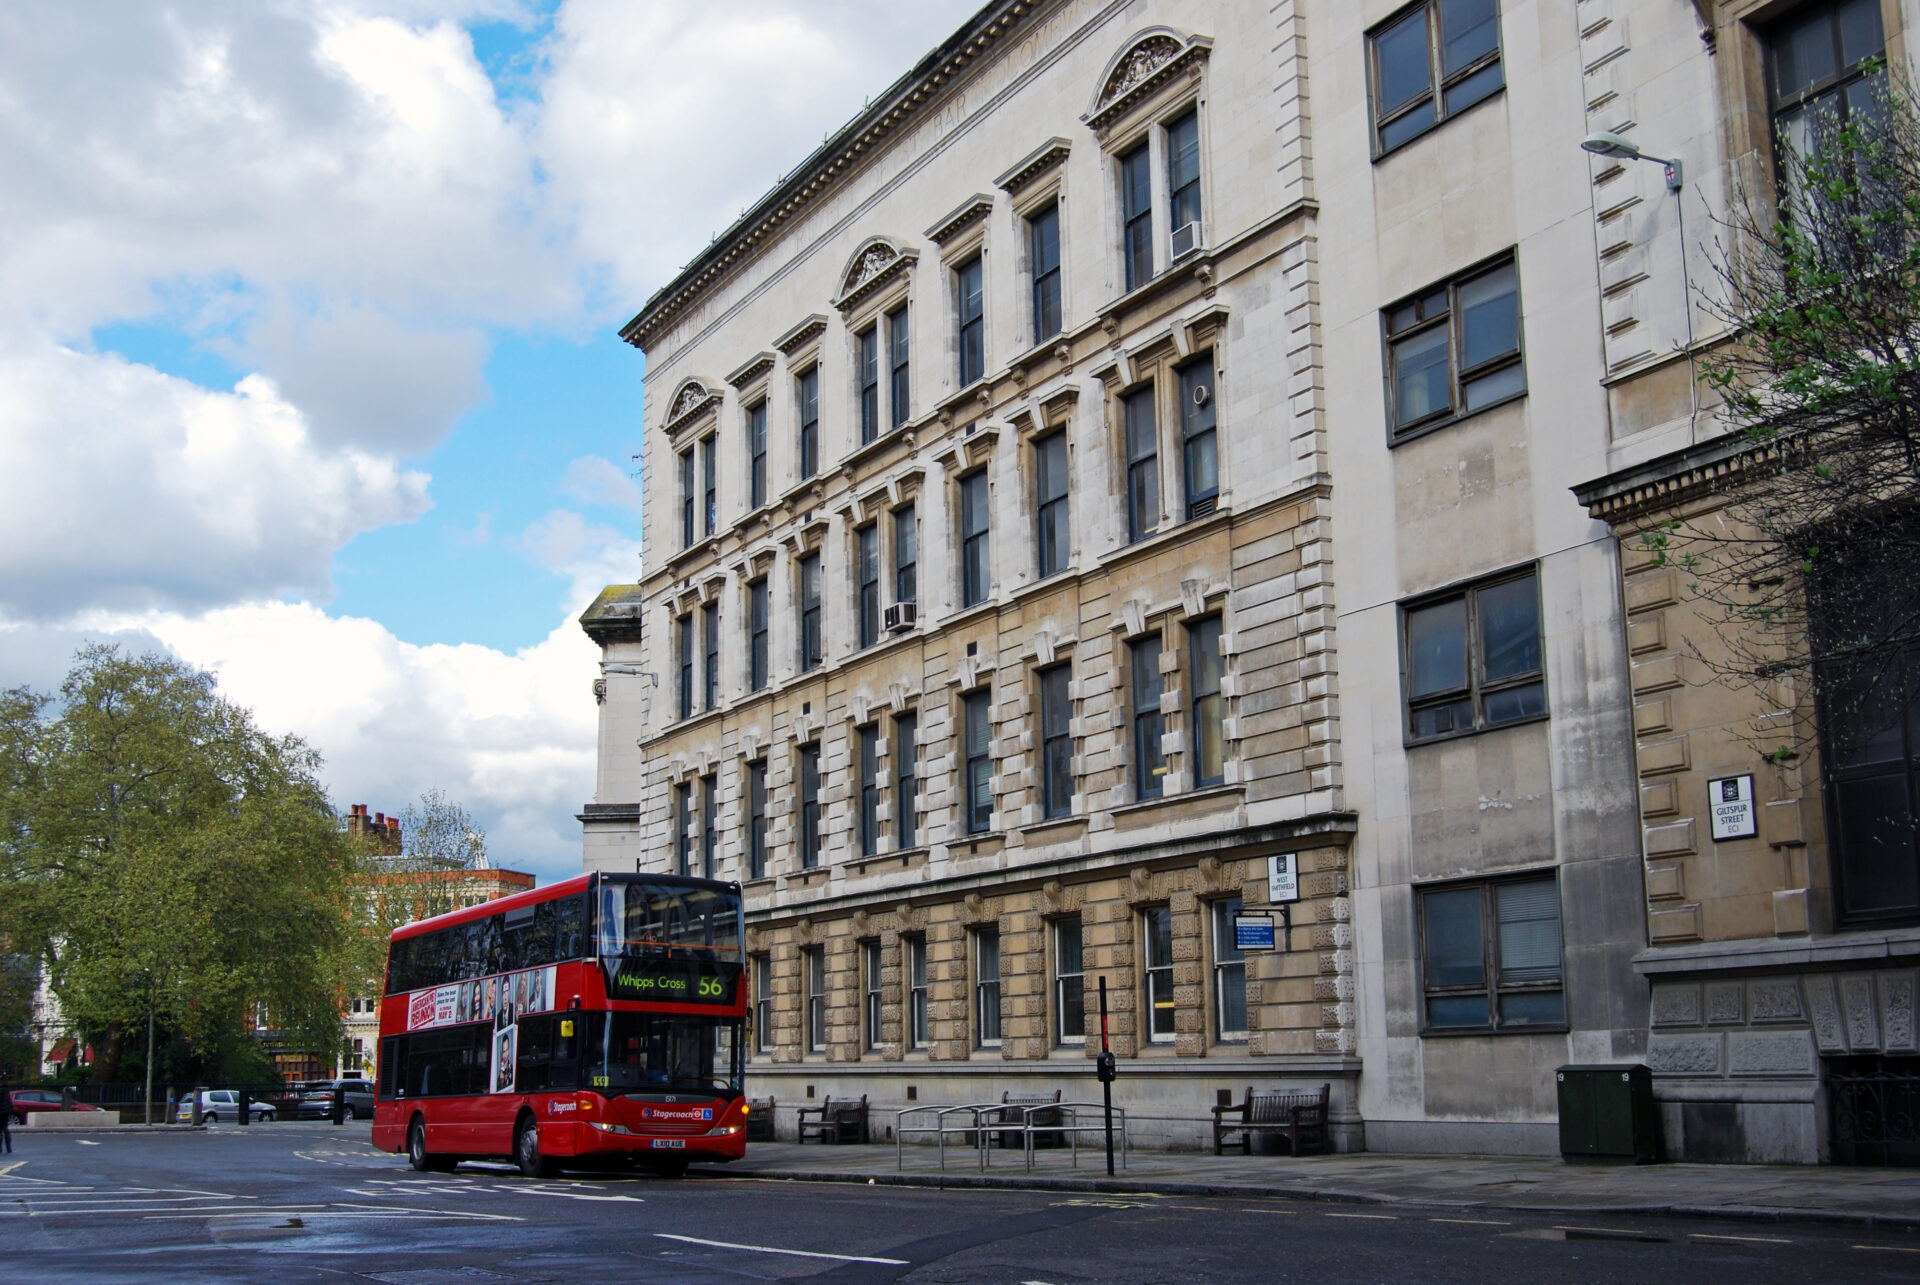 Cenários-e-Museu-de-Sherlock-Holmes-em-Londres-um-estudo-em-vermelho Cenários e Museu de Sherlock Holmes em Londres 